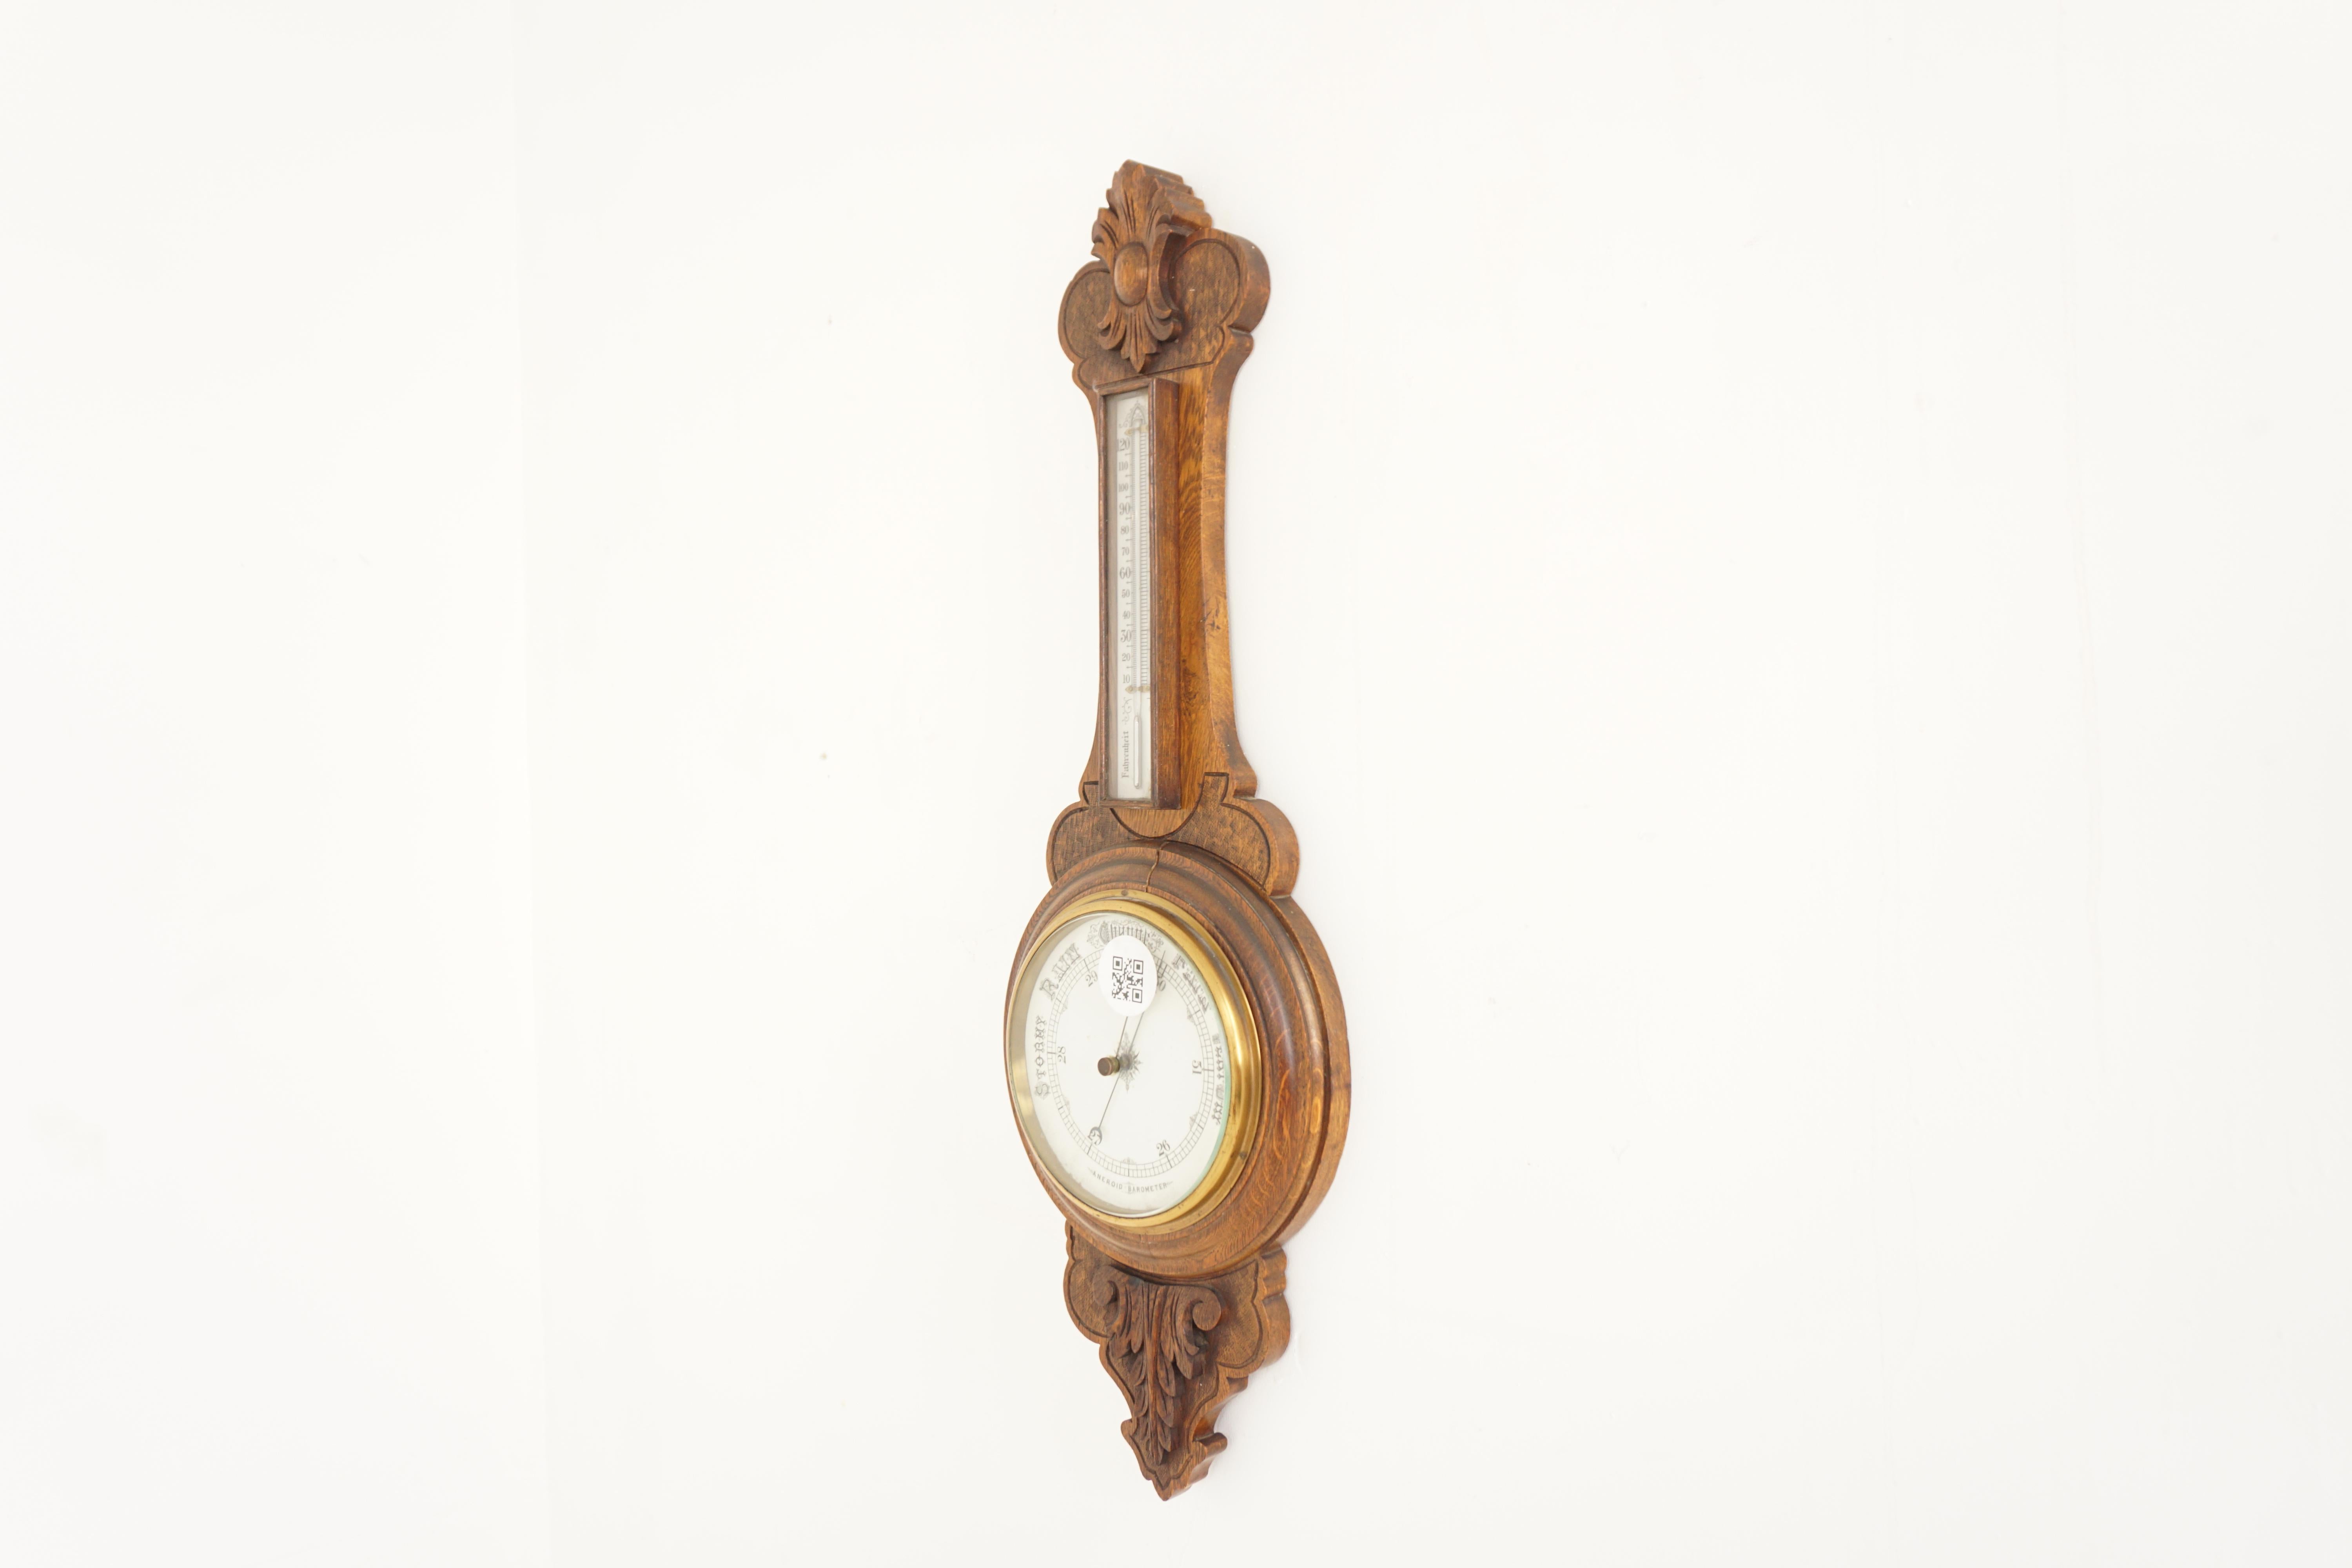 Ant. Viktorianisches Aneroidbarometer aus geschnitzter Eiche, Schottland 1900, H854

Schottland 1900
Eiche massiv
Originale Ausführung
Eiche geschnitzt florale Schnitzerei auf oben und unten
Das Barometer hat ein Thermometer, das in einem